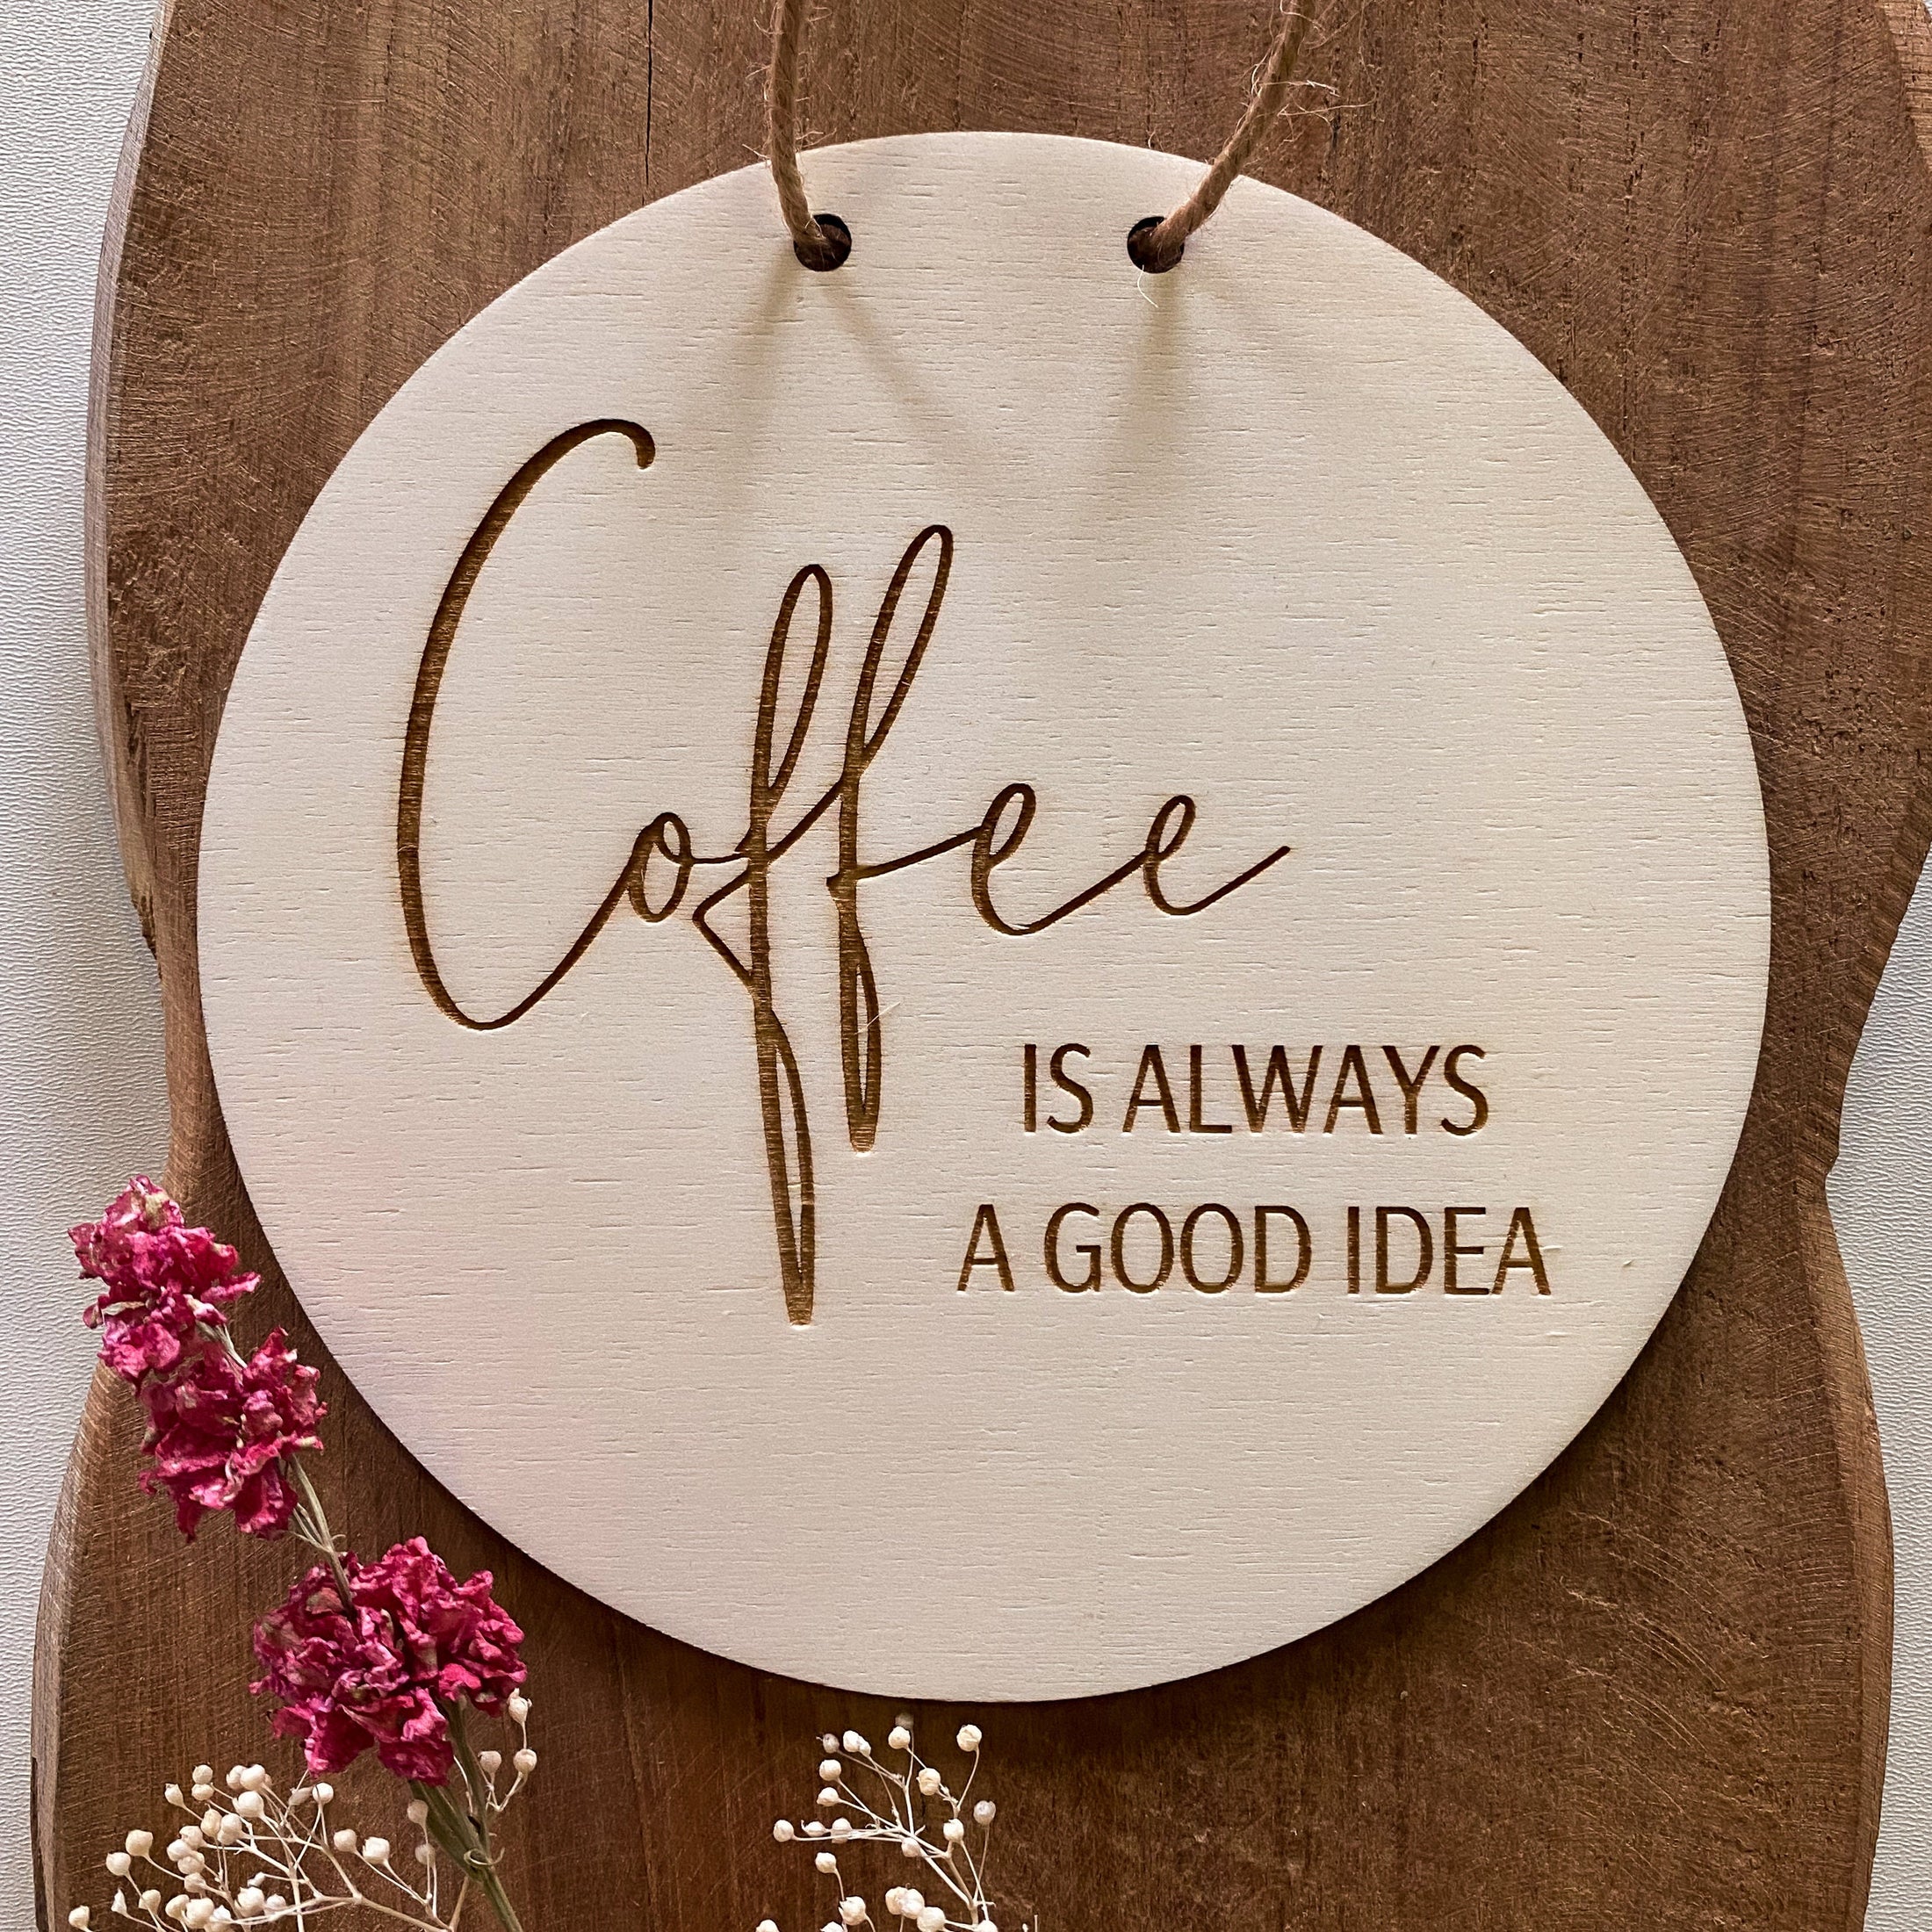 Wandbild "Coffee is always a good idea"